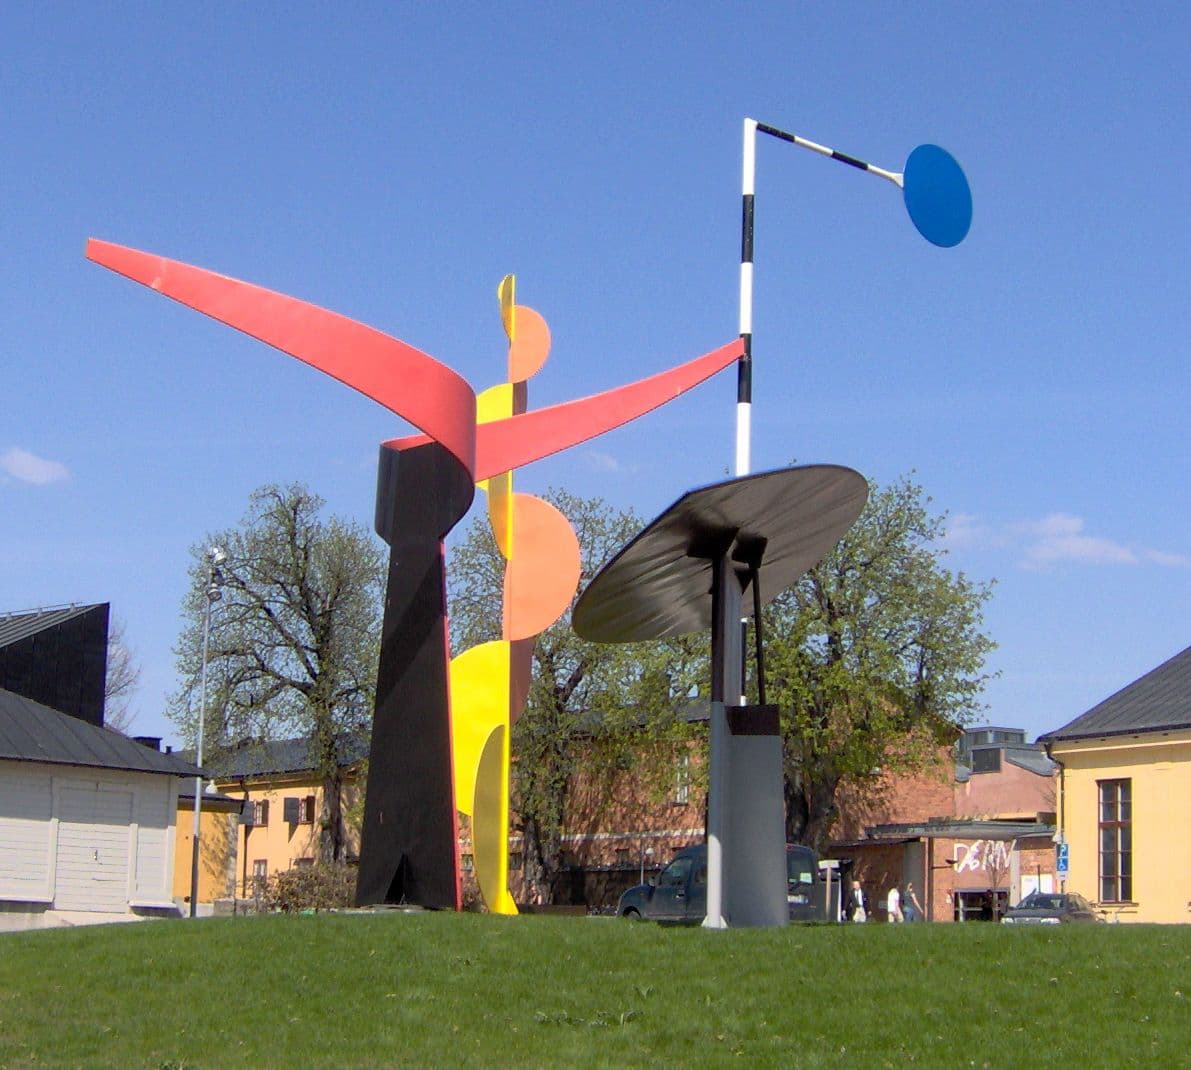 Σύκο.. 3 - Alexander Calder, Τα τέσσερα στοιχεία, έξω από το Μουσείο Μοντέρνας Τέχνης της Στοκχόλμης, Σουηδία, 2006. Φωτογραφίες: Δεν παρέχεται μηχανικά αναγνώσιμος συγγραφέας. Kalle1~commonswiki υποτίθεται (βάσει αξιώσεων πνευματικών δικαιωμάτων)., Δημόσιος τομέας, μέσω Wikimedia Commons.